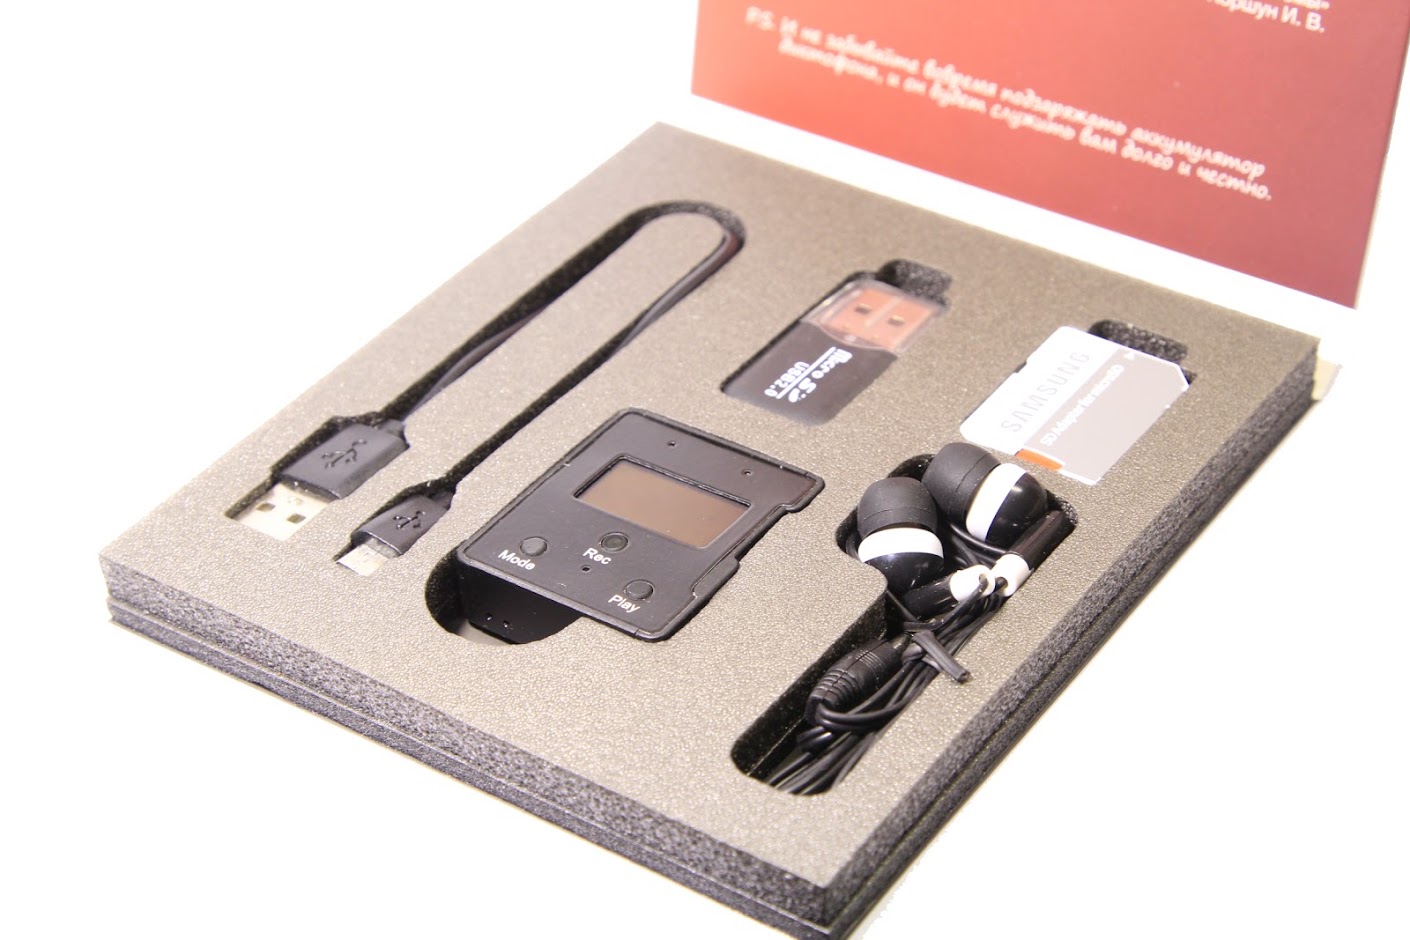 ТС Edic-mini CARD24S модель A102 диктофон цифровой